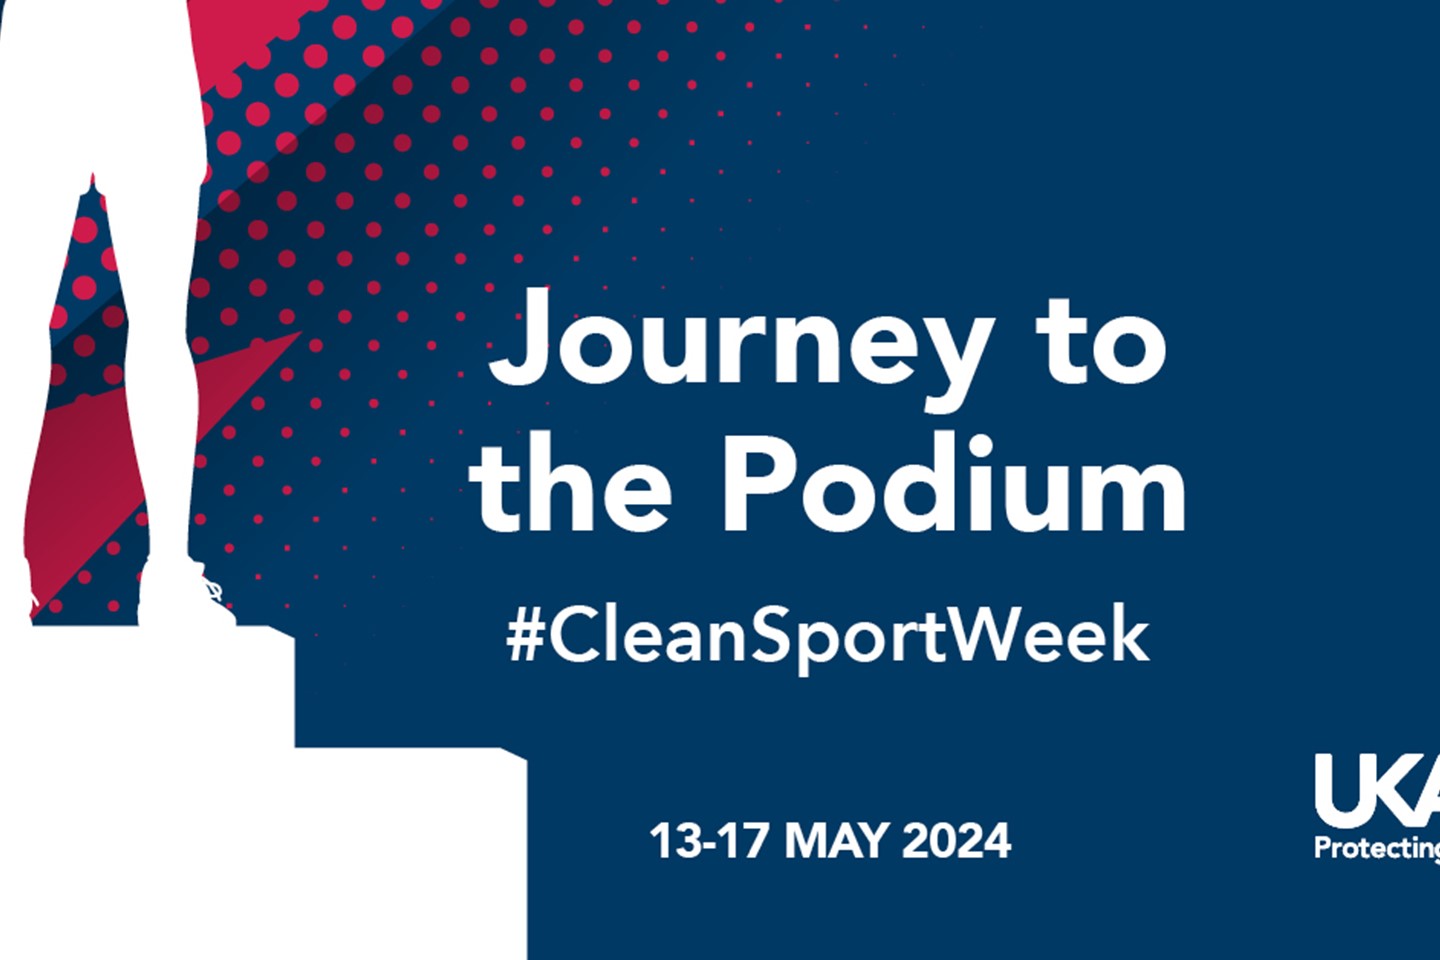 Clean Sport Week